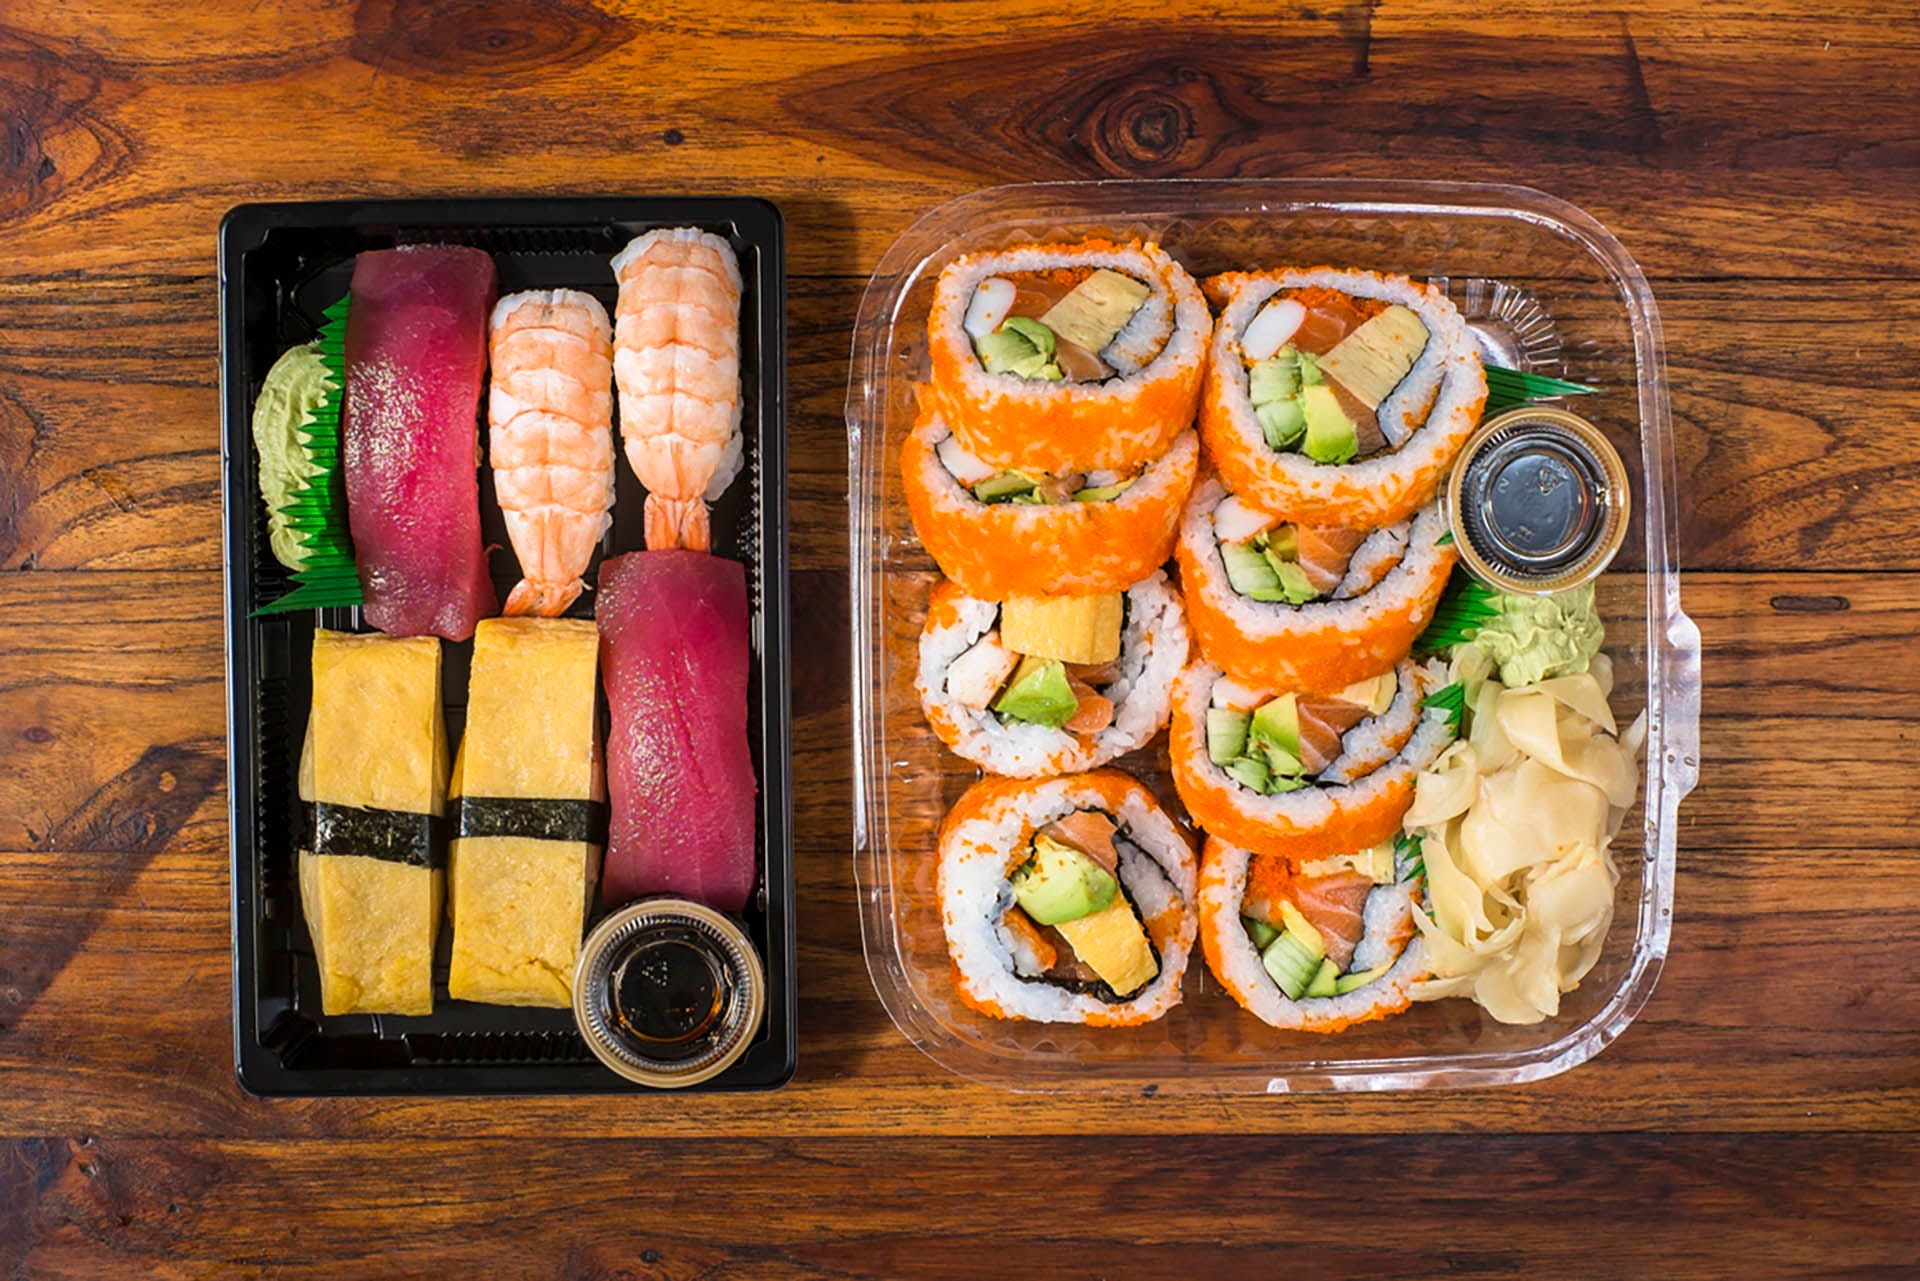 Sashimi and maki rolls